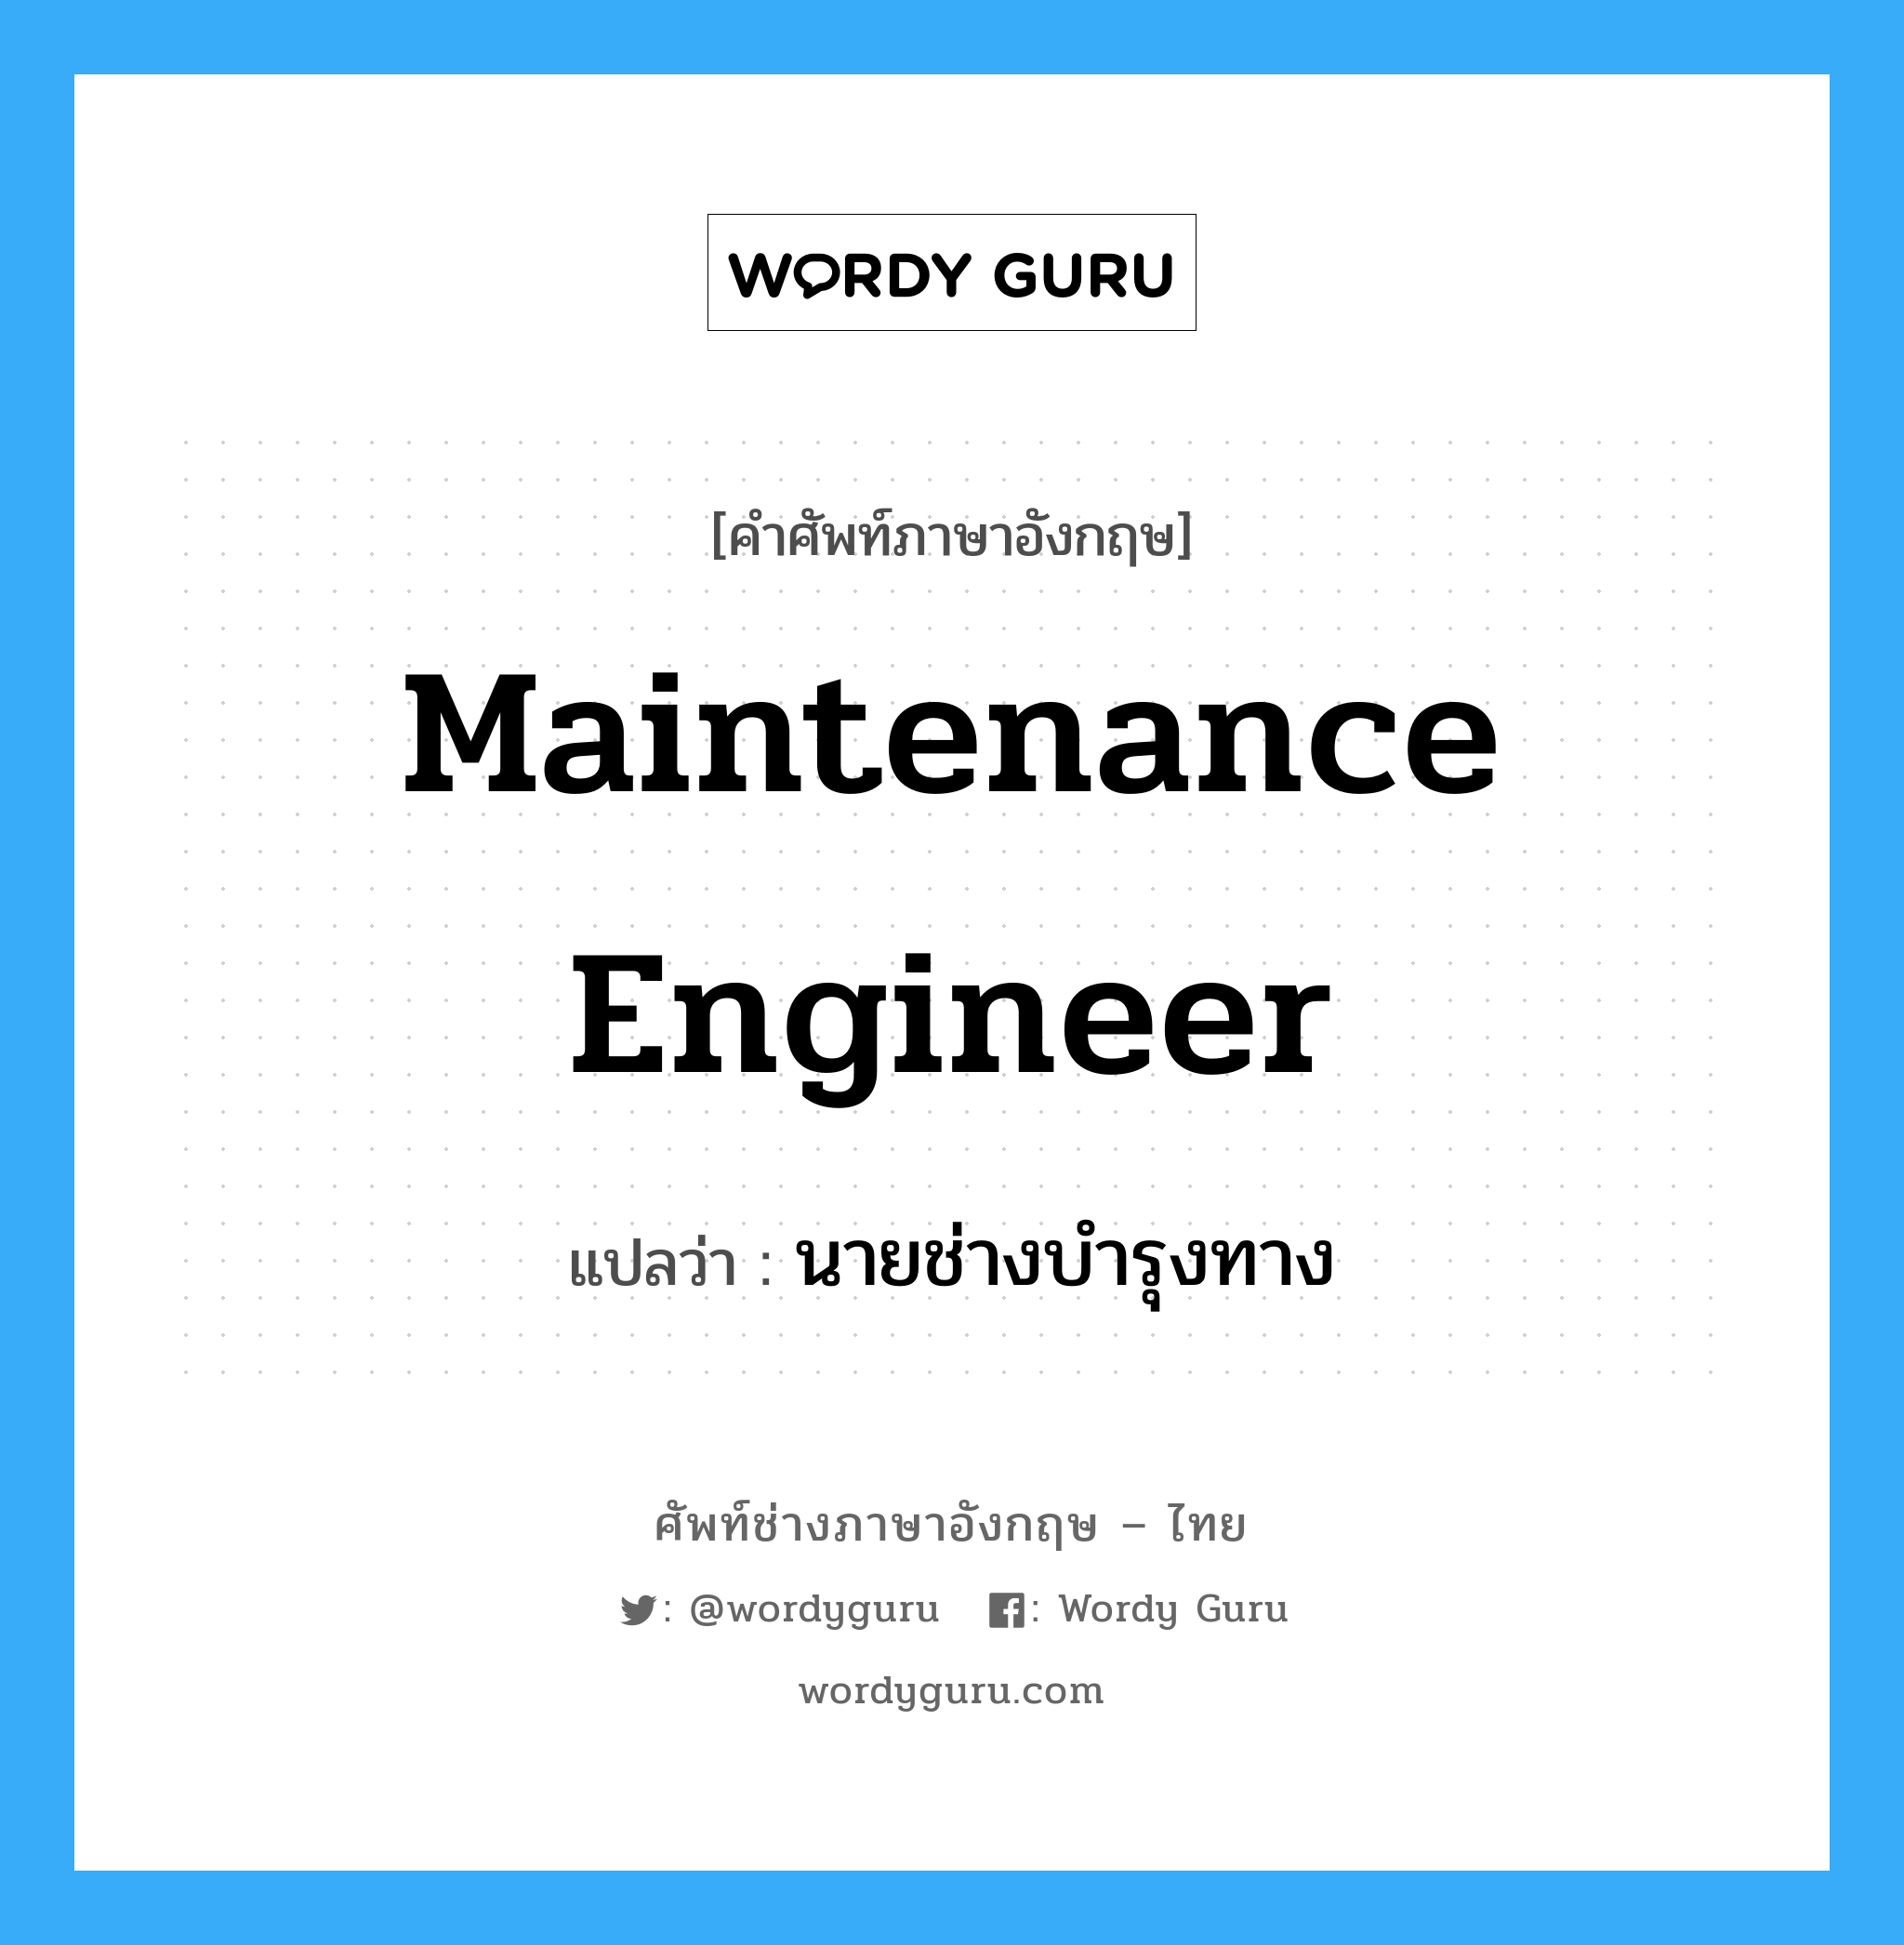 นายช่างบำรุงทาง ภาษาอังกฤษ?, คำศัพท์ช่างภาษาอังกฤษ - ไทย นายช่างบำรุงทาง คำศัพท์ภาษาอังกฤษ นายช่างบำรุงทาง แปลว่า maintenance engineer